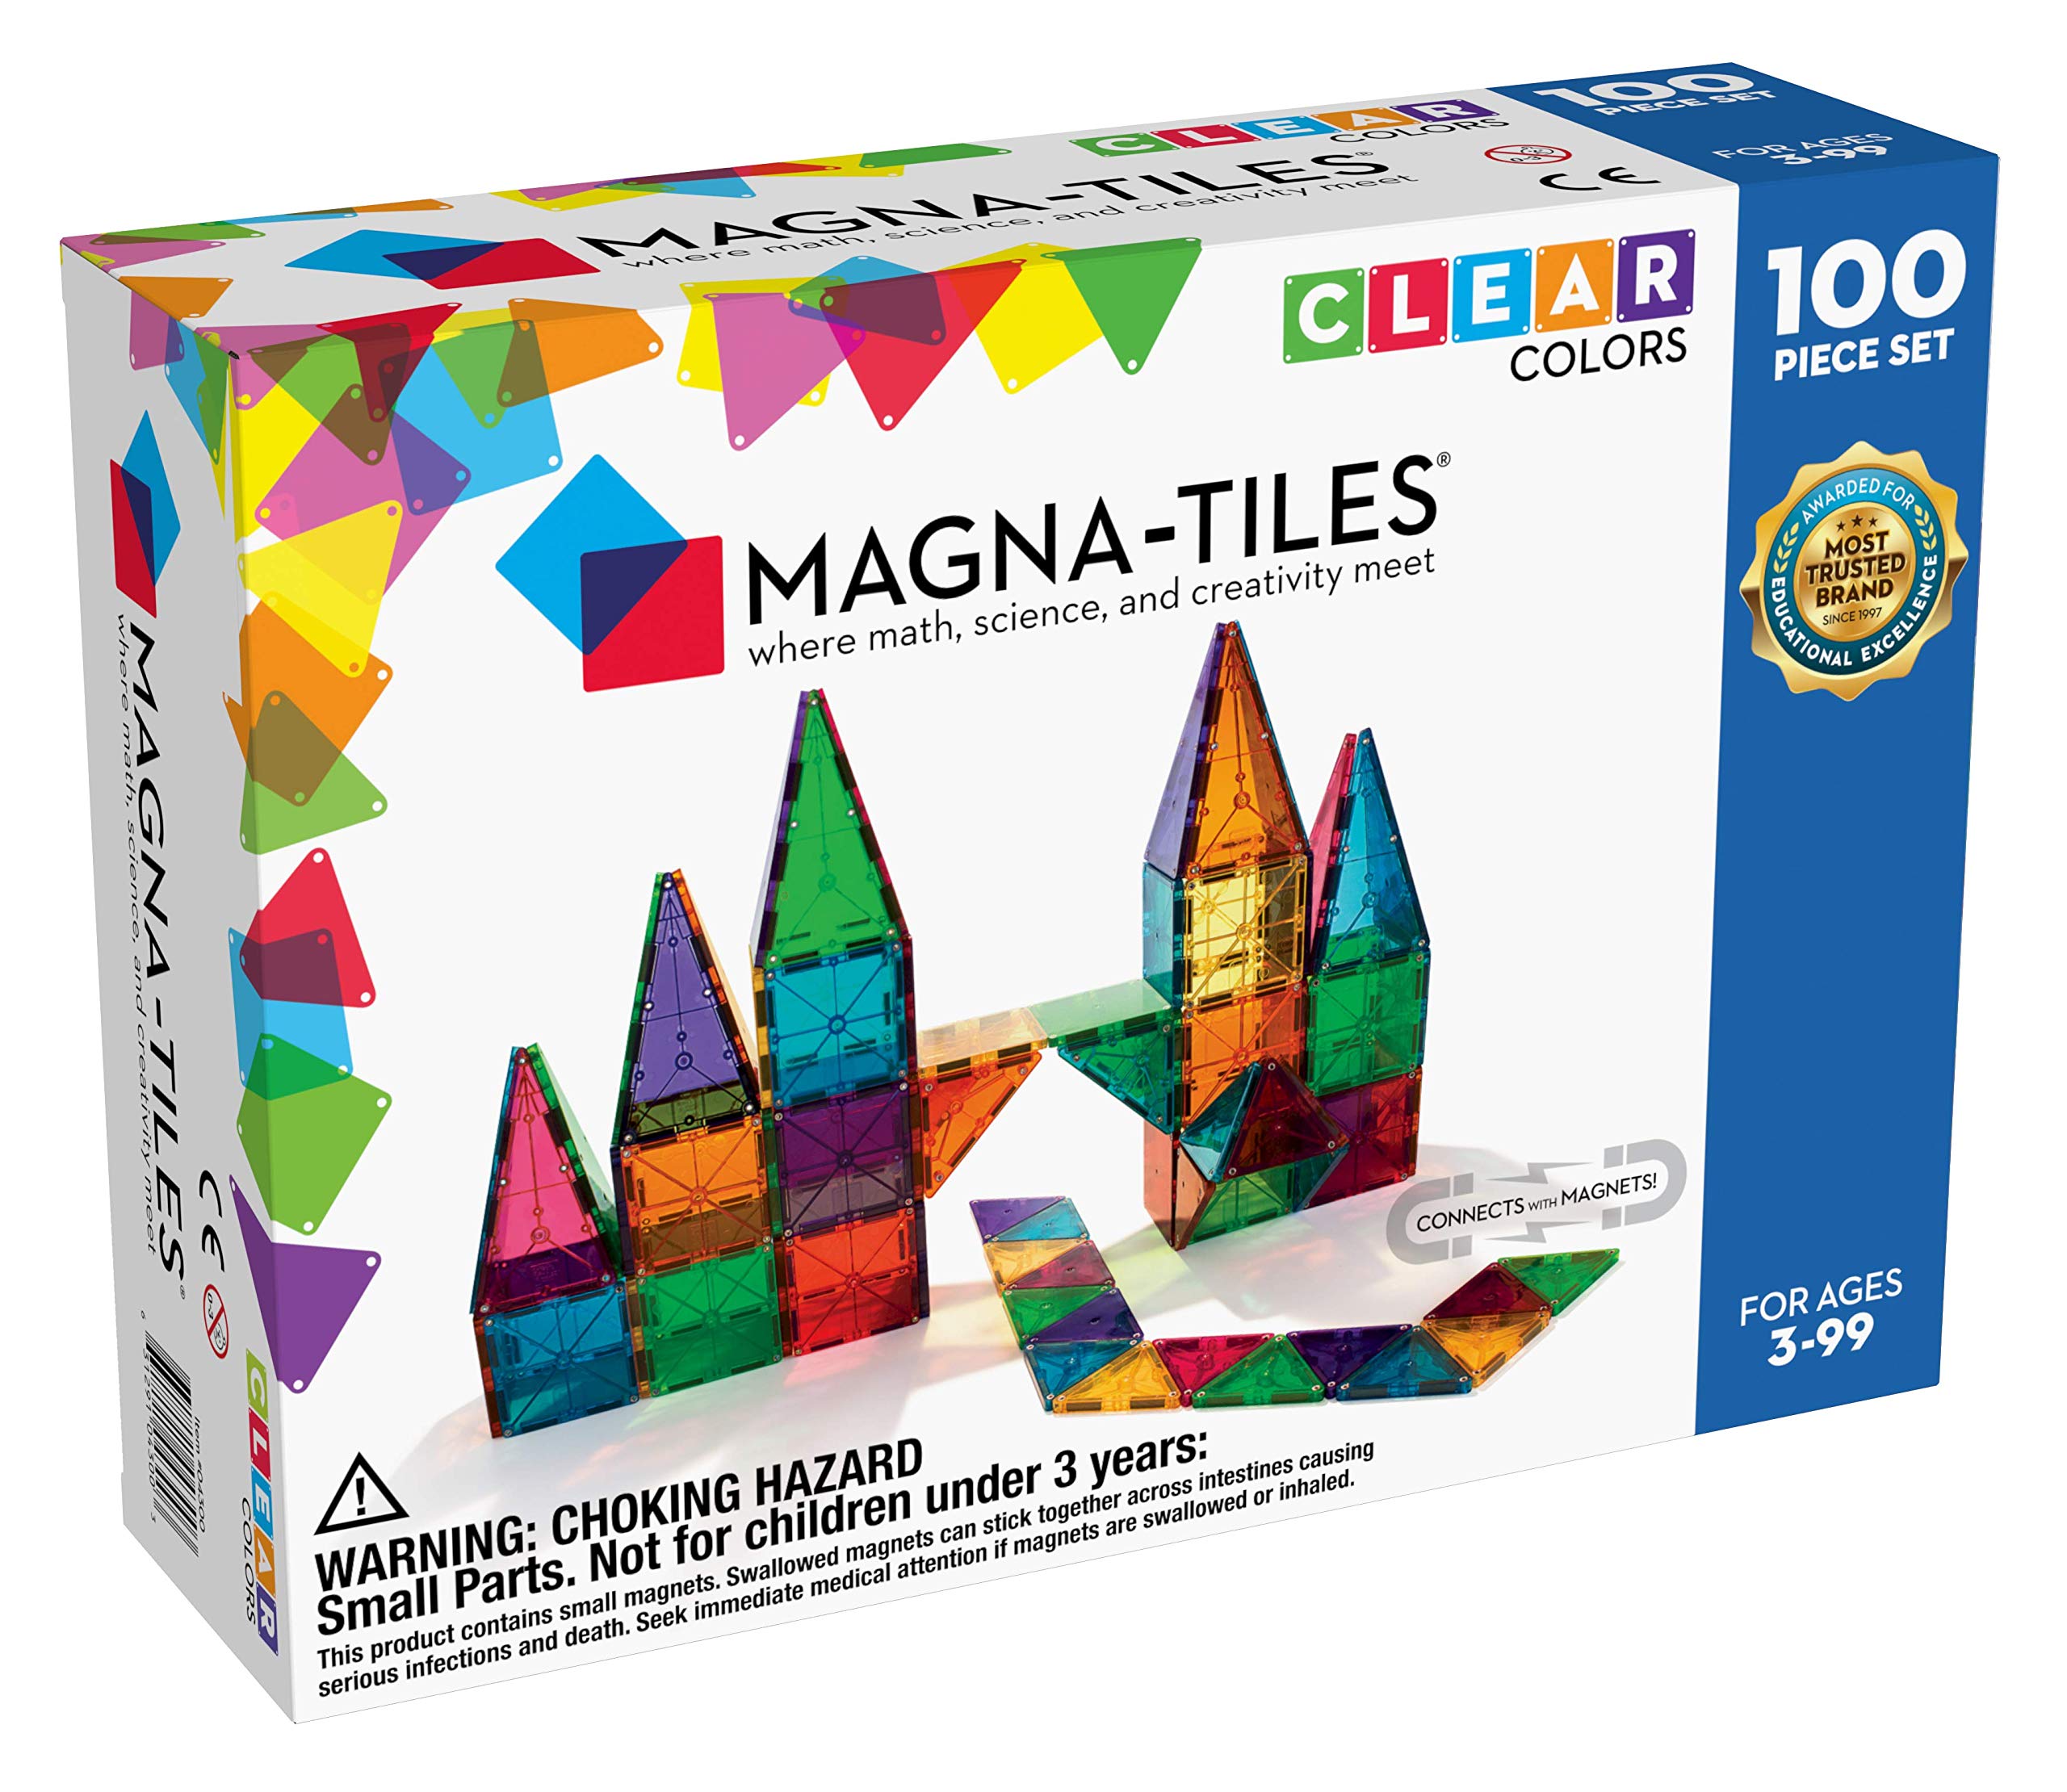 Magna Tiles Magna-Tiles 100-Piece Clear Colors Set, The...